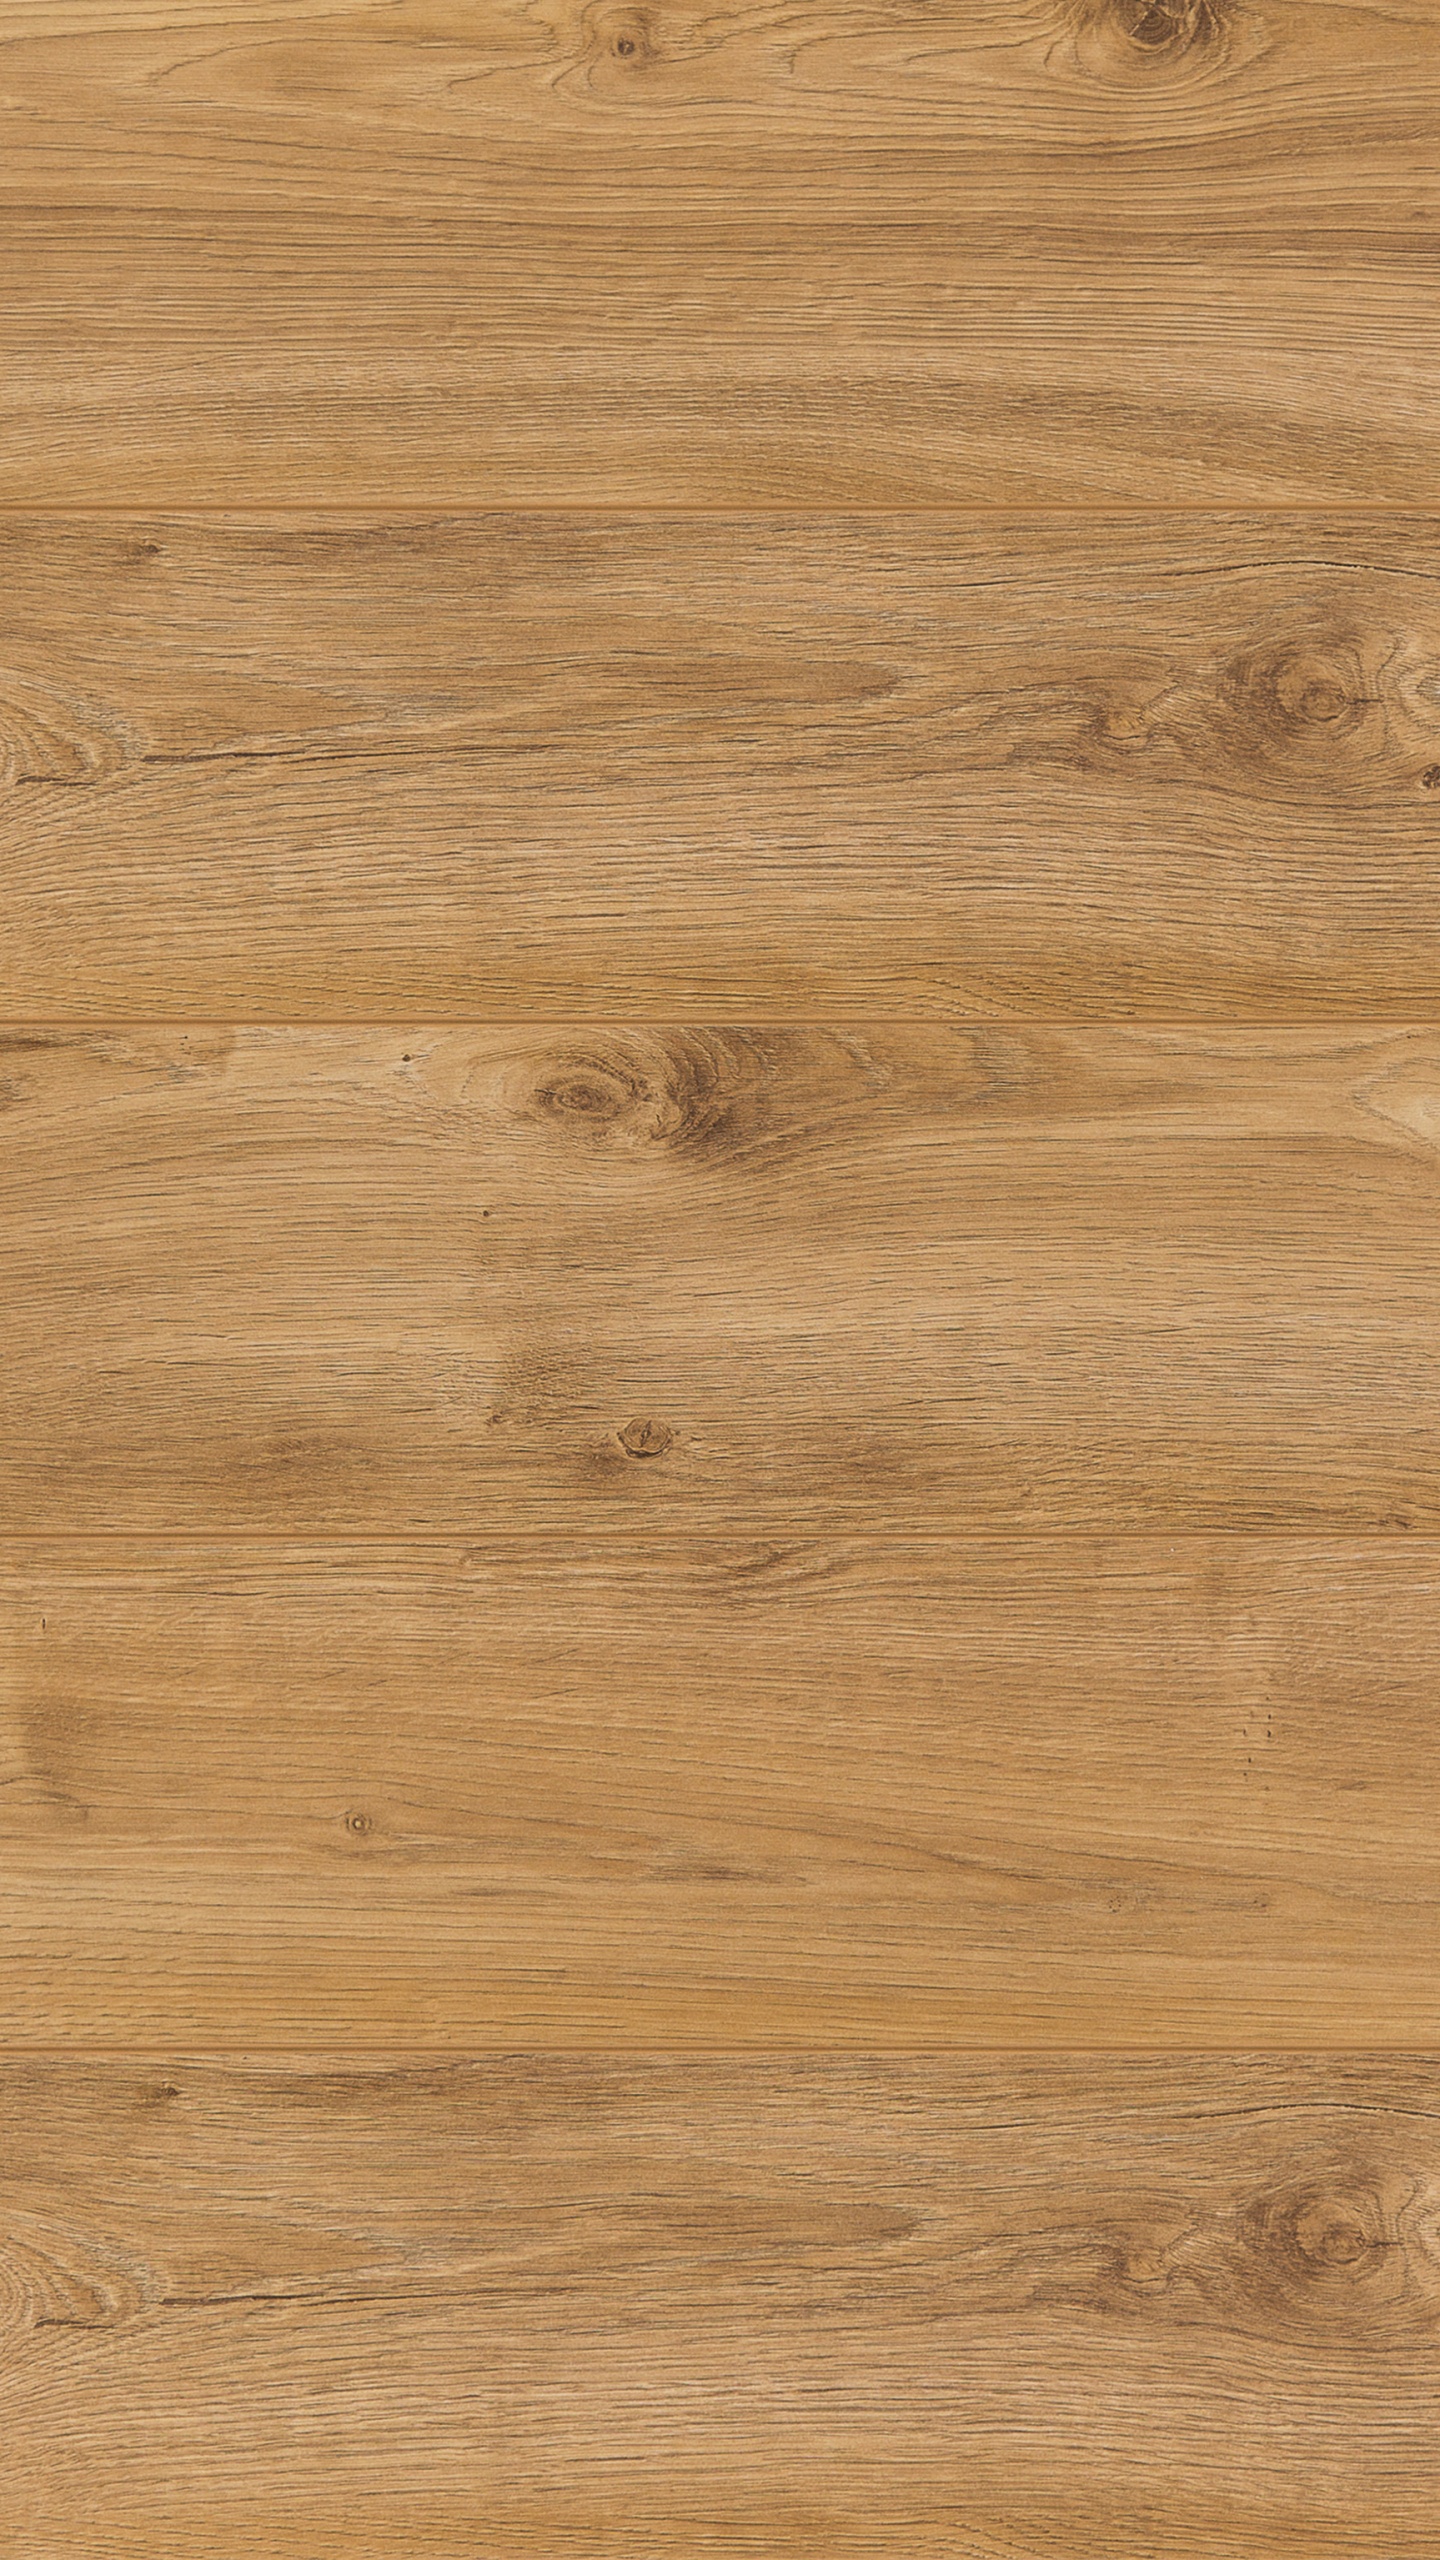 Brown Wooden Parquet Floor Tiles. Wallpaper in 1440x2560 Resolution